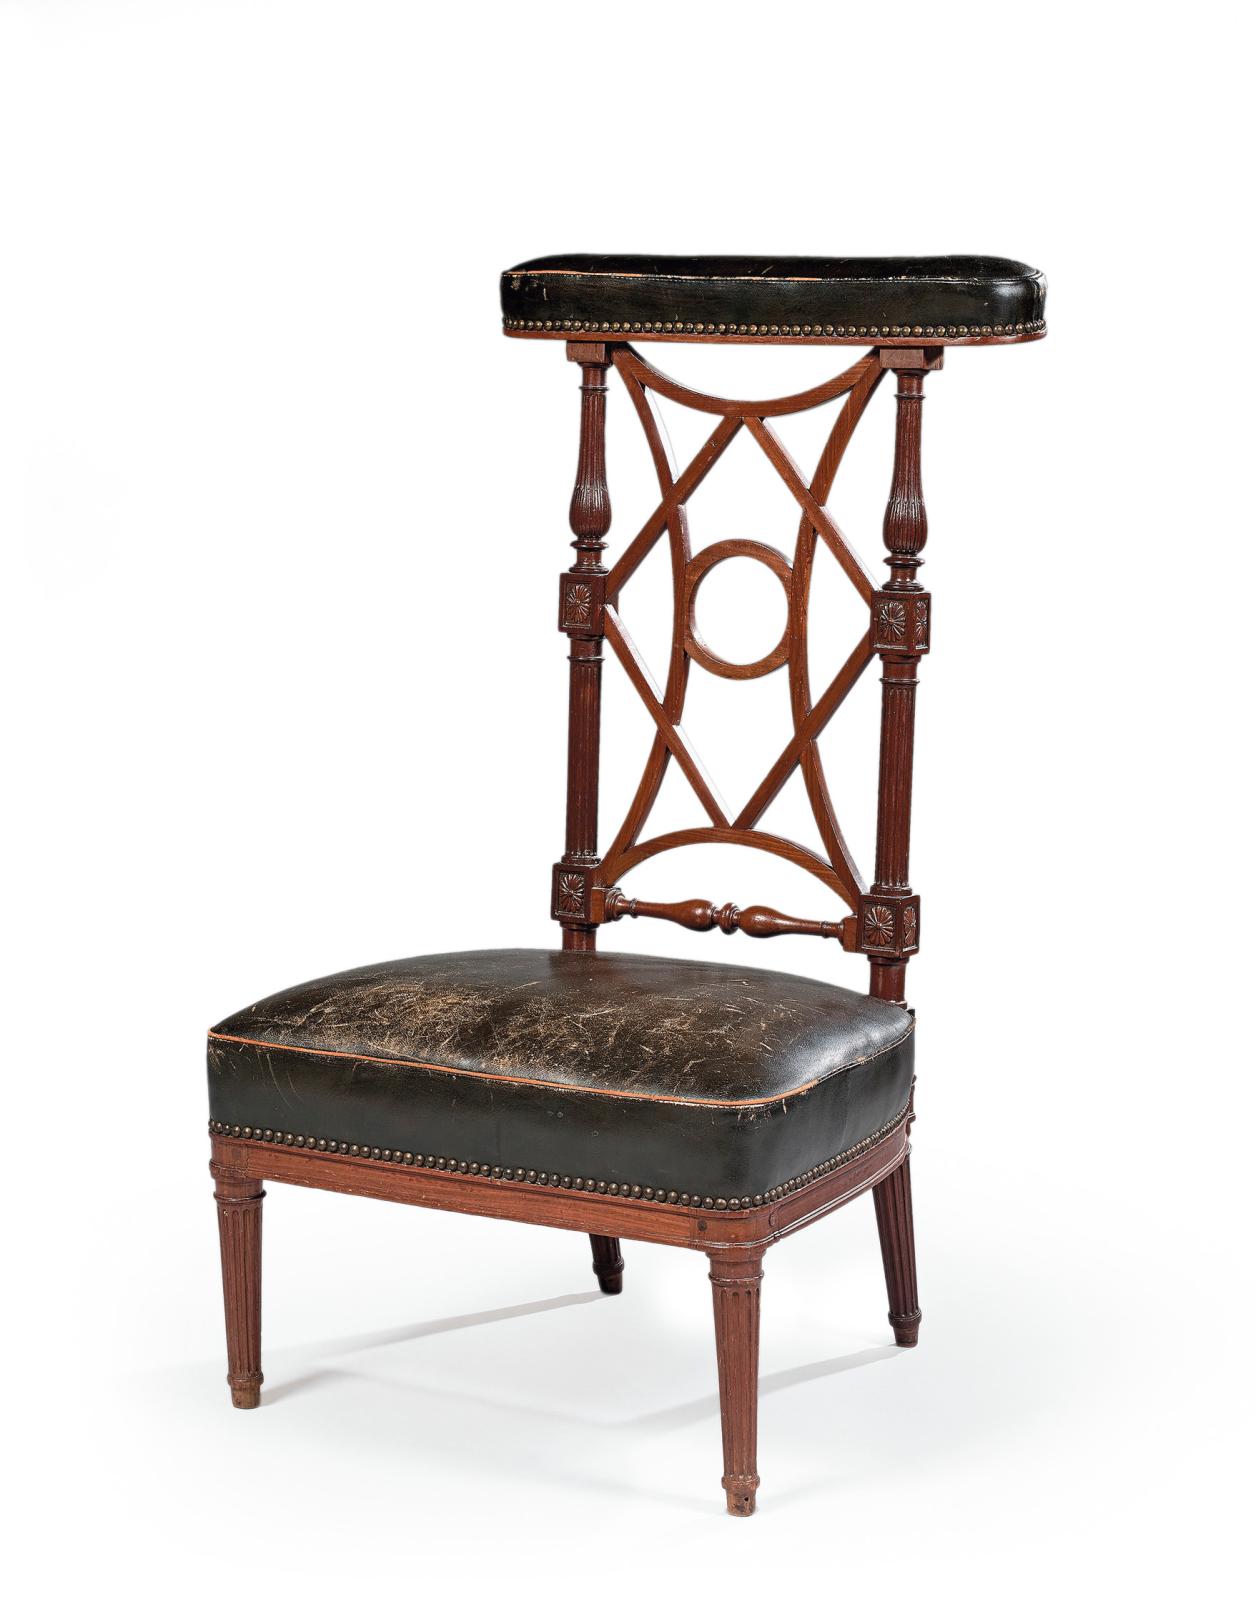 Époque Louis XVI, chaise ponteuse en acajou de Cuba, portant une estampille Jean Baptiste Boulard, 96 x 53 x 46,5 cm. Drouot, 22 mai 2019.